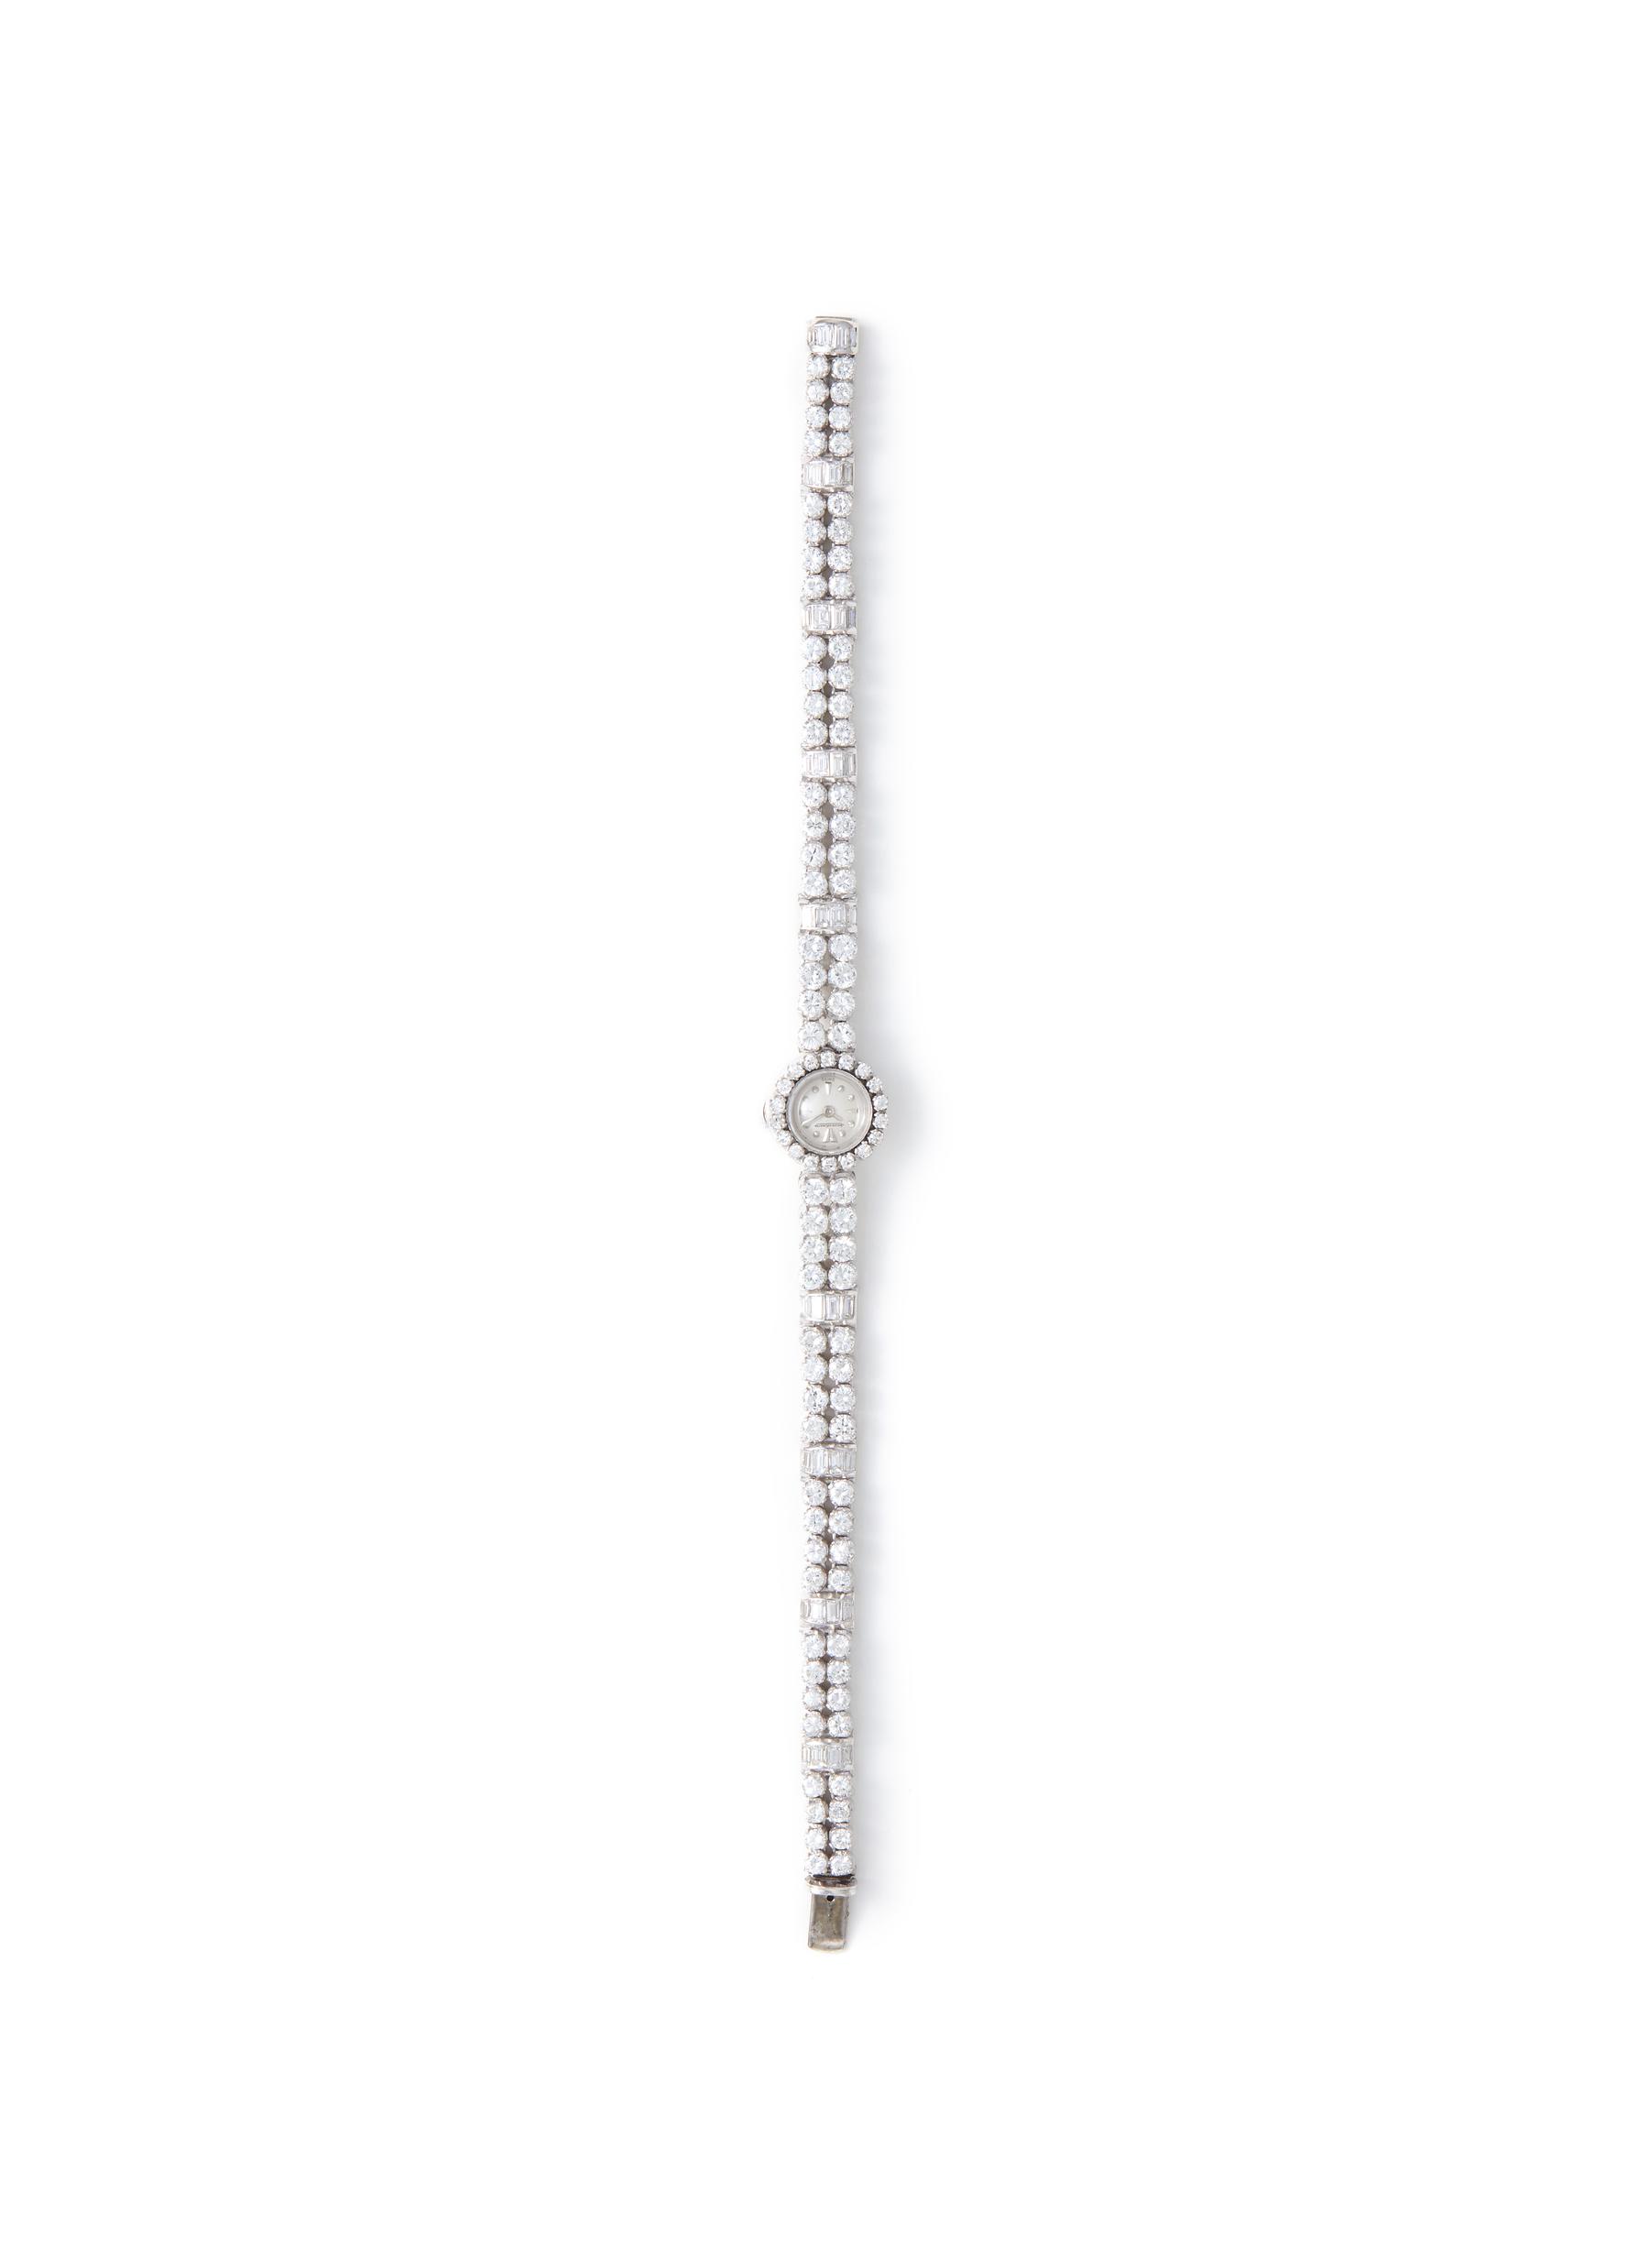 LANE CRAWFORD VINTAGE WATCHES | Omega 18k White Gold Case Circular Dial  Diamond Lady Wrist Watch | Women | Lane Crawford